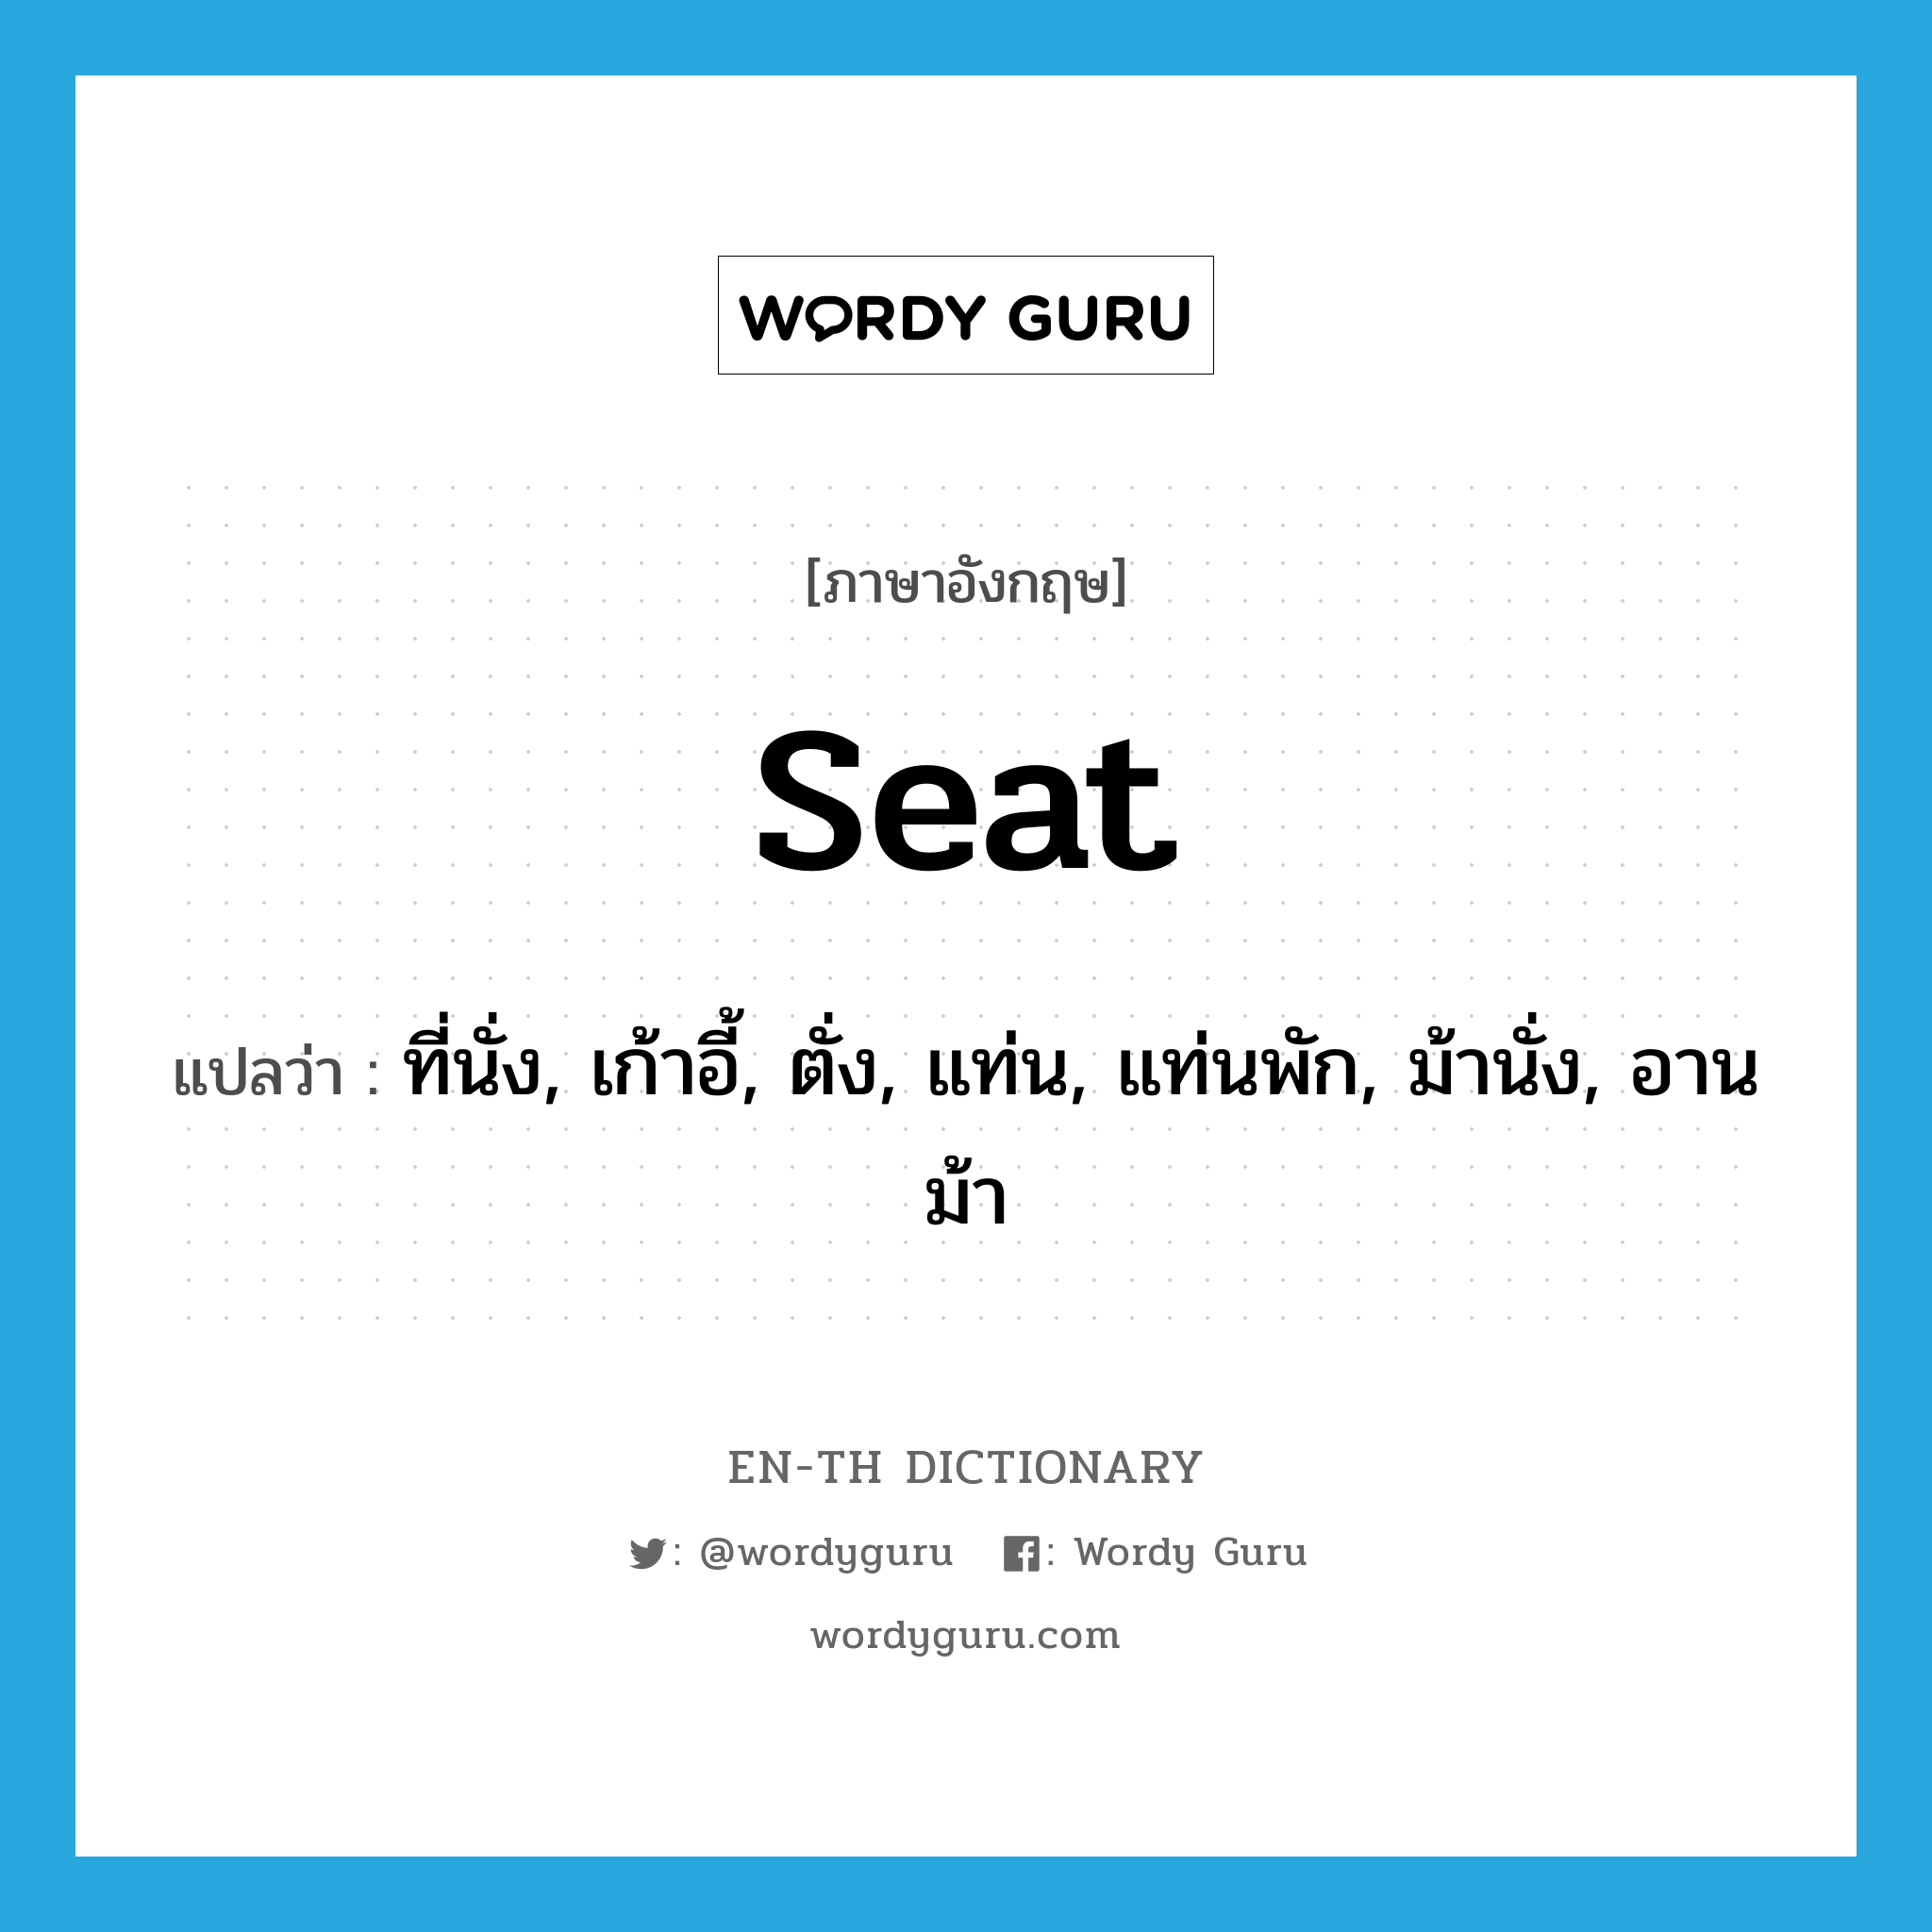 ที่นั่ง, เก้าอี้, ตั่ง, แท่น, แท่นพัก, ม้านั่ง, อานม้า ภาษาอังกฤษ? | Wordy  Guru